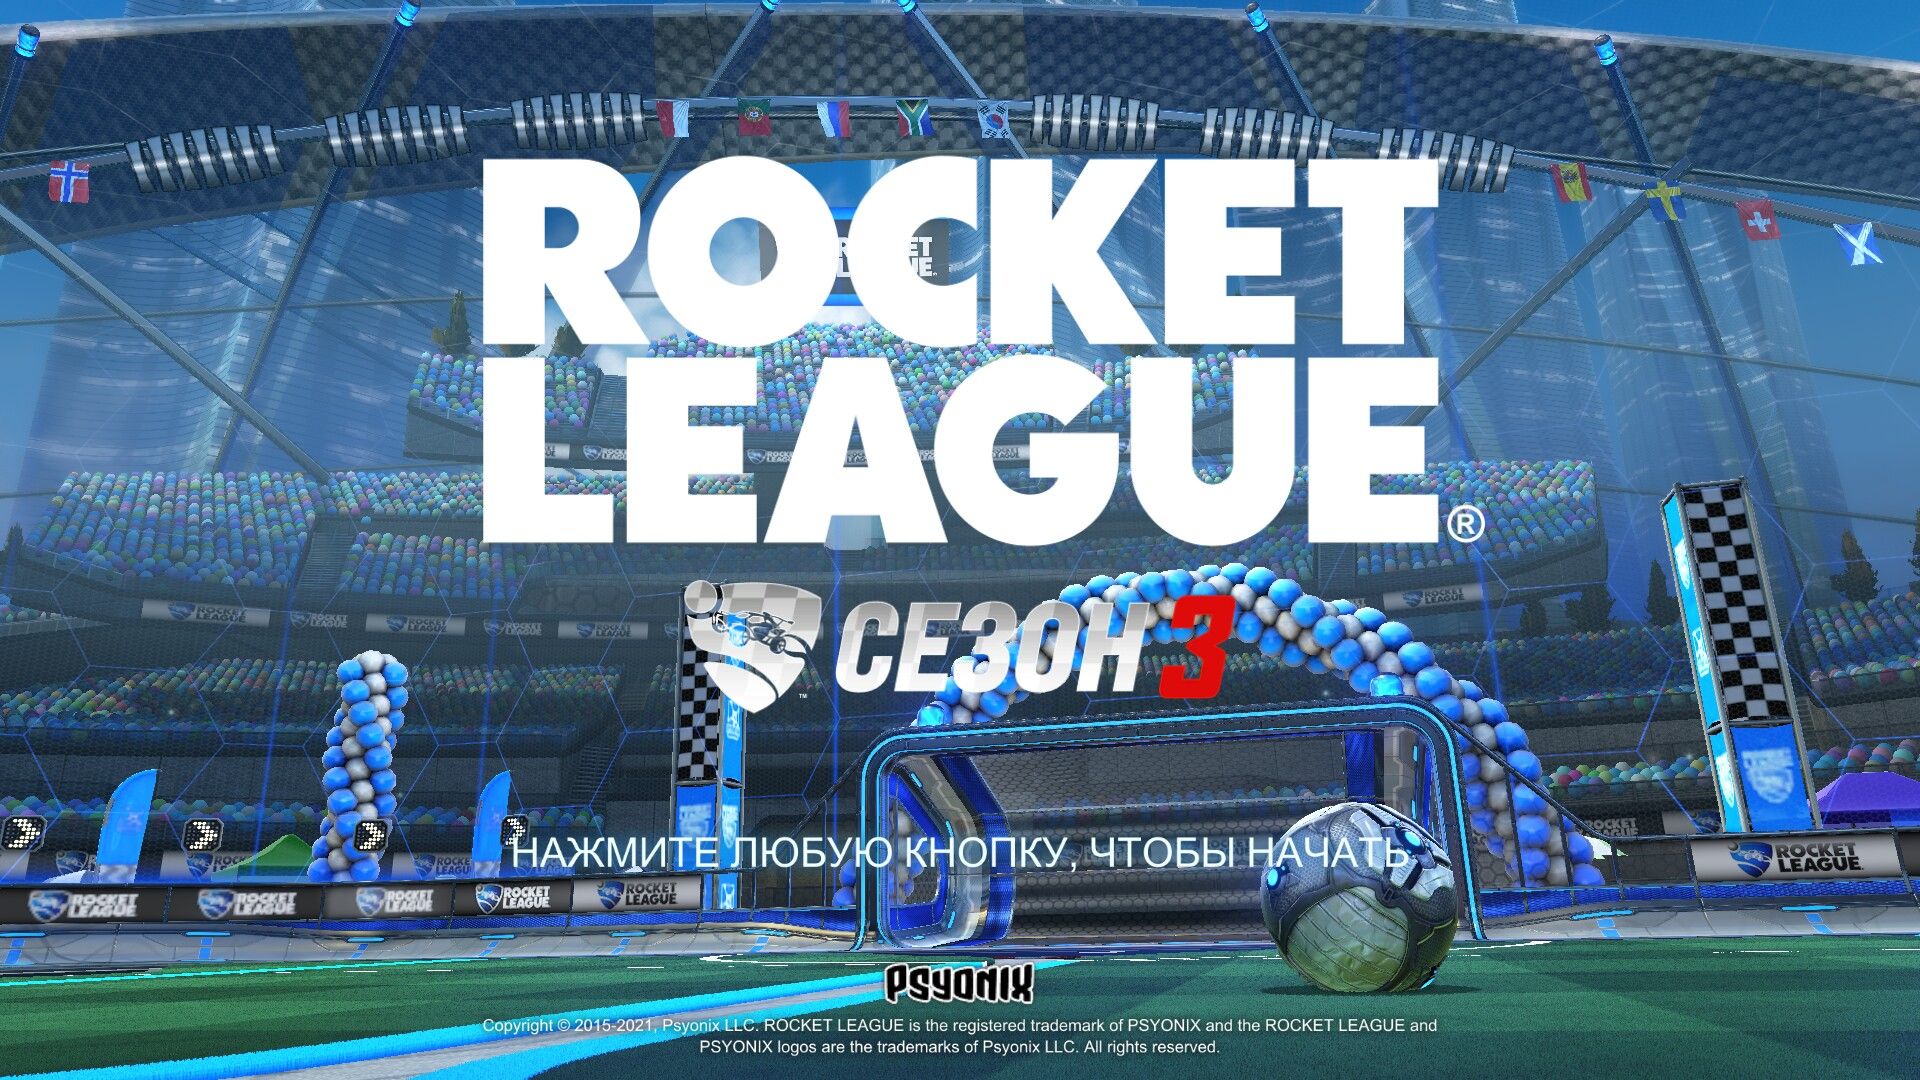 rocket league - epic overtime comeback 7-6